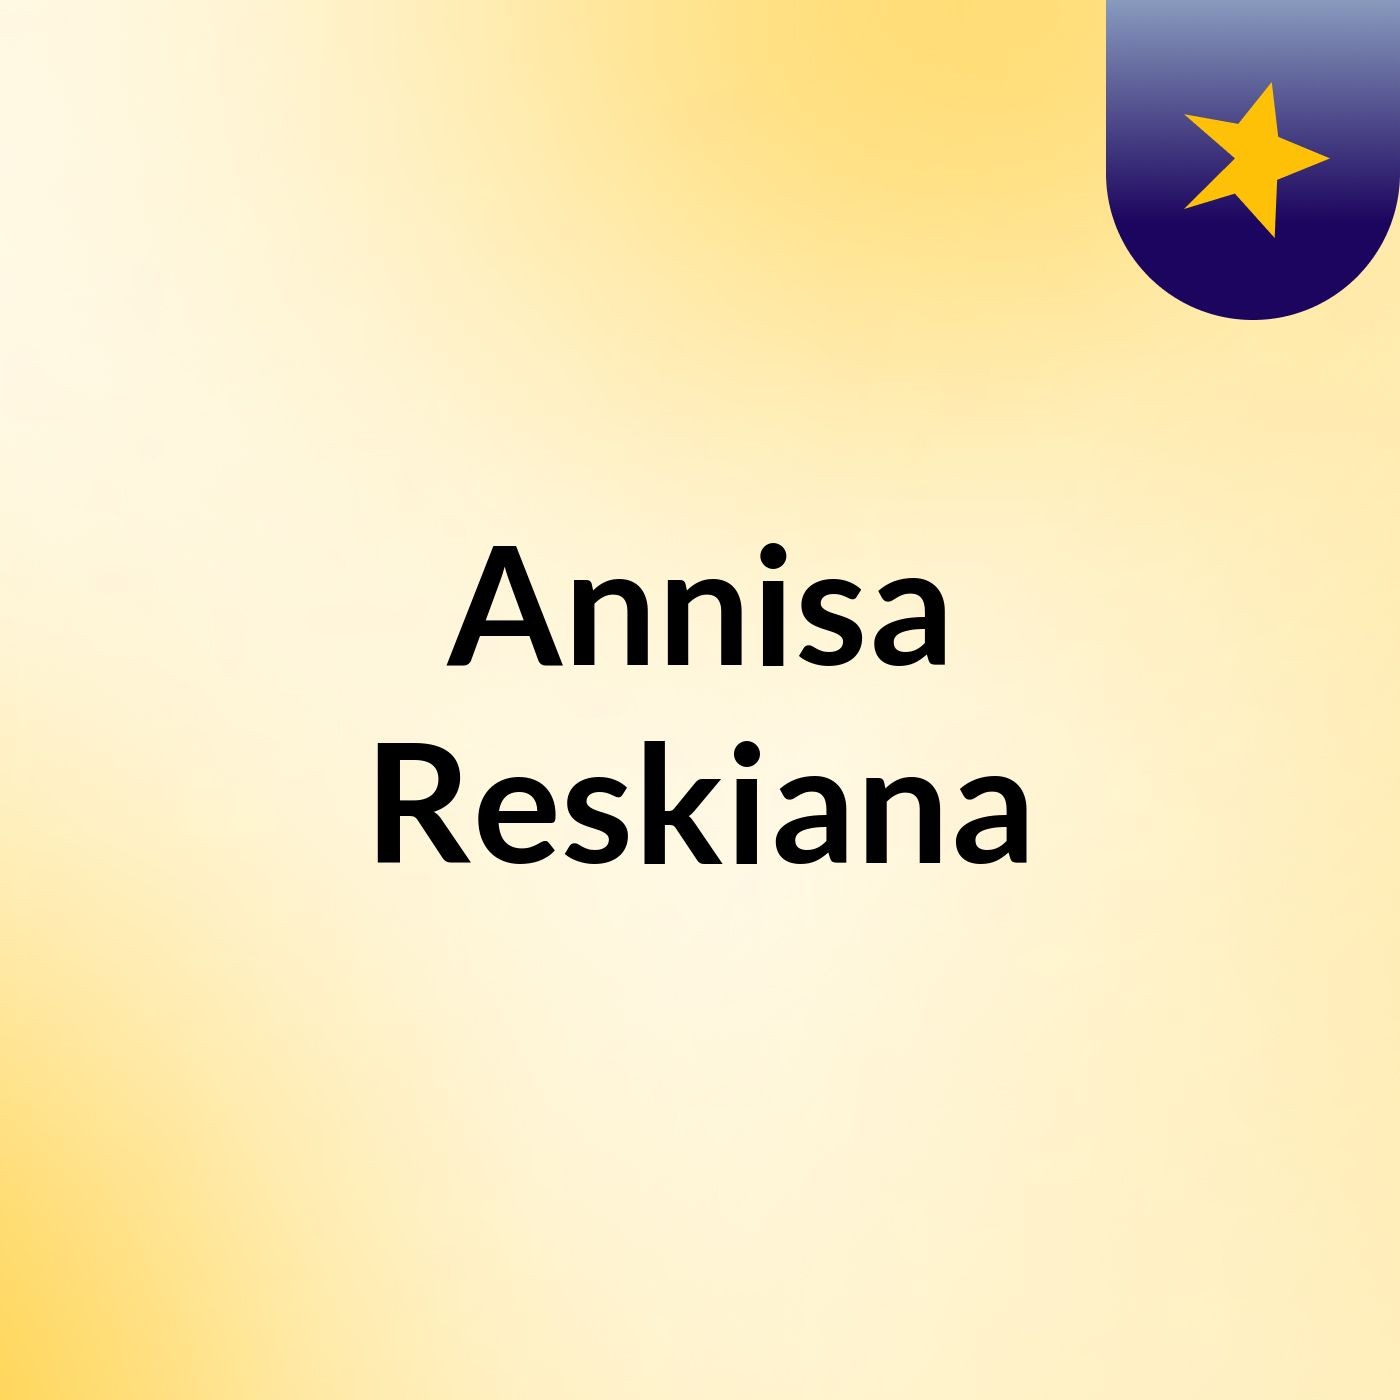 Annisa Reskiana